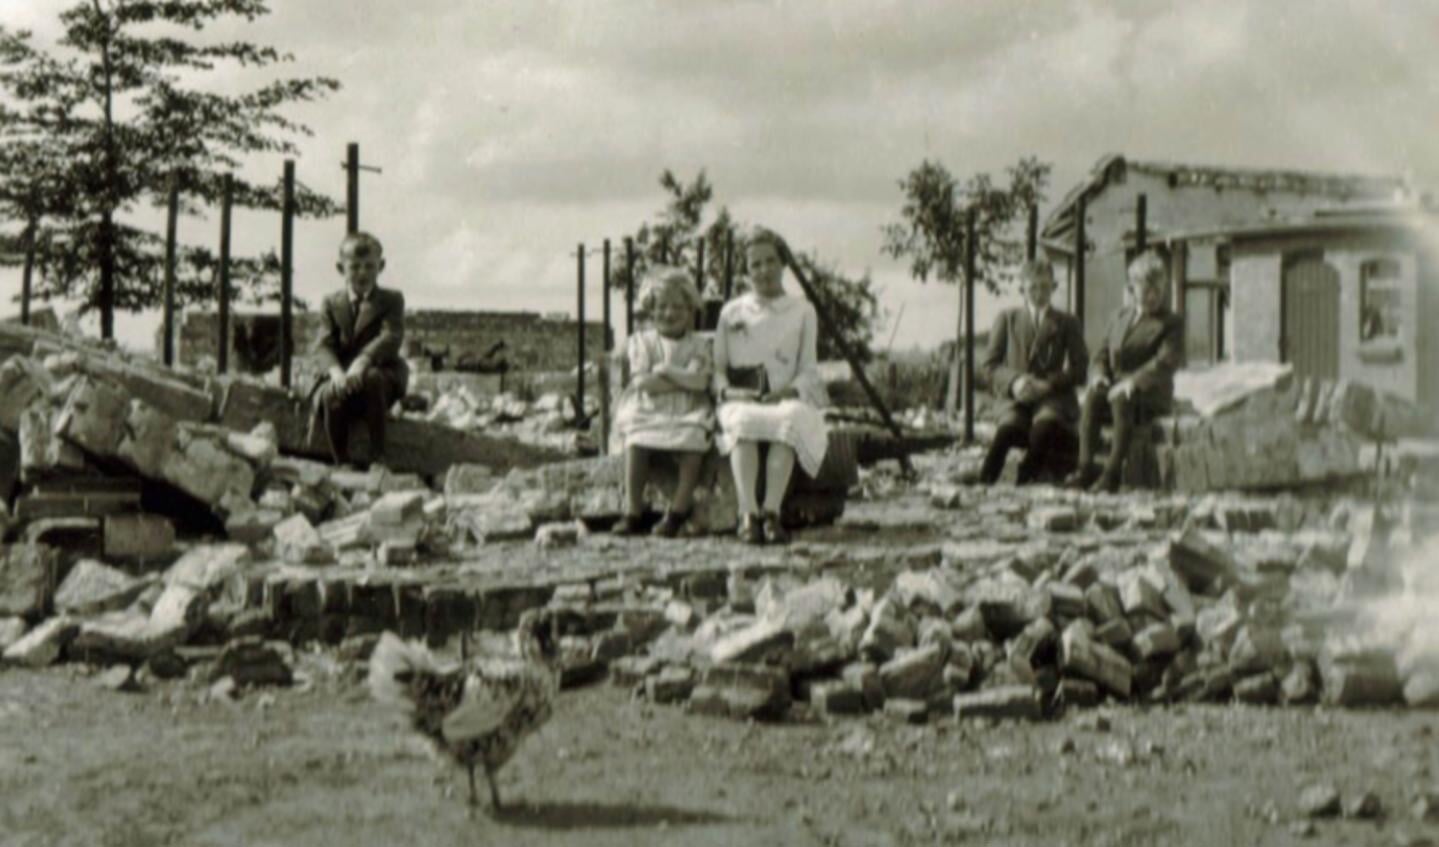 Foto 5: De kinderen van de familie Van Eijden – Johan, Marietje, Annie, René en Jan – poseren voor de foto op de ruïnes van wat voorheen hun ouderlijk huis was. Tijdens de strijd om de Grebbelinie in mei 1940 is ook hun boerderij uit 1926 verwoest.